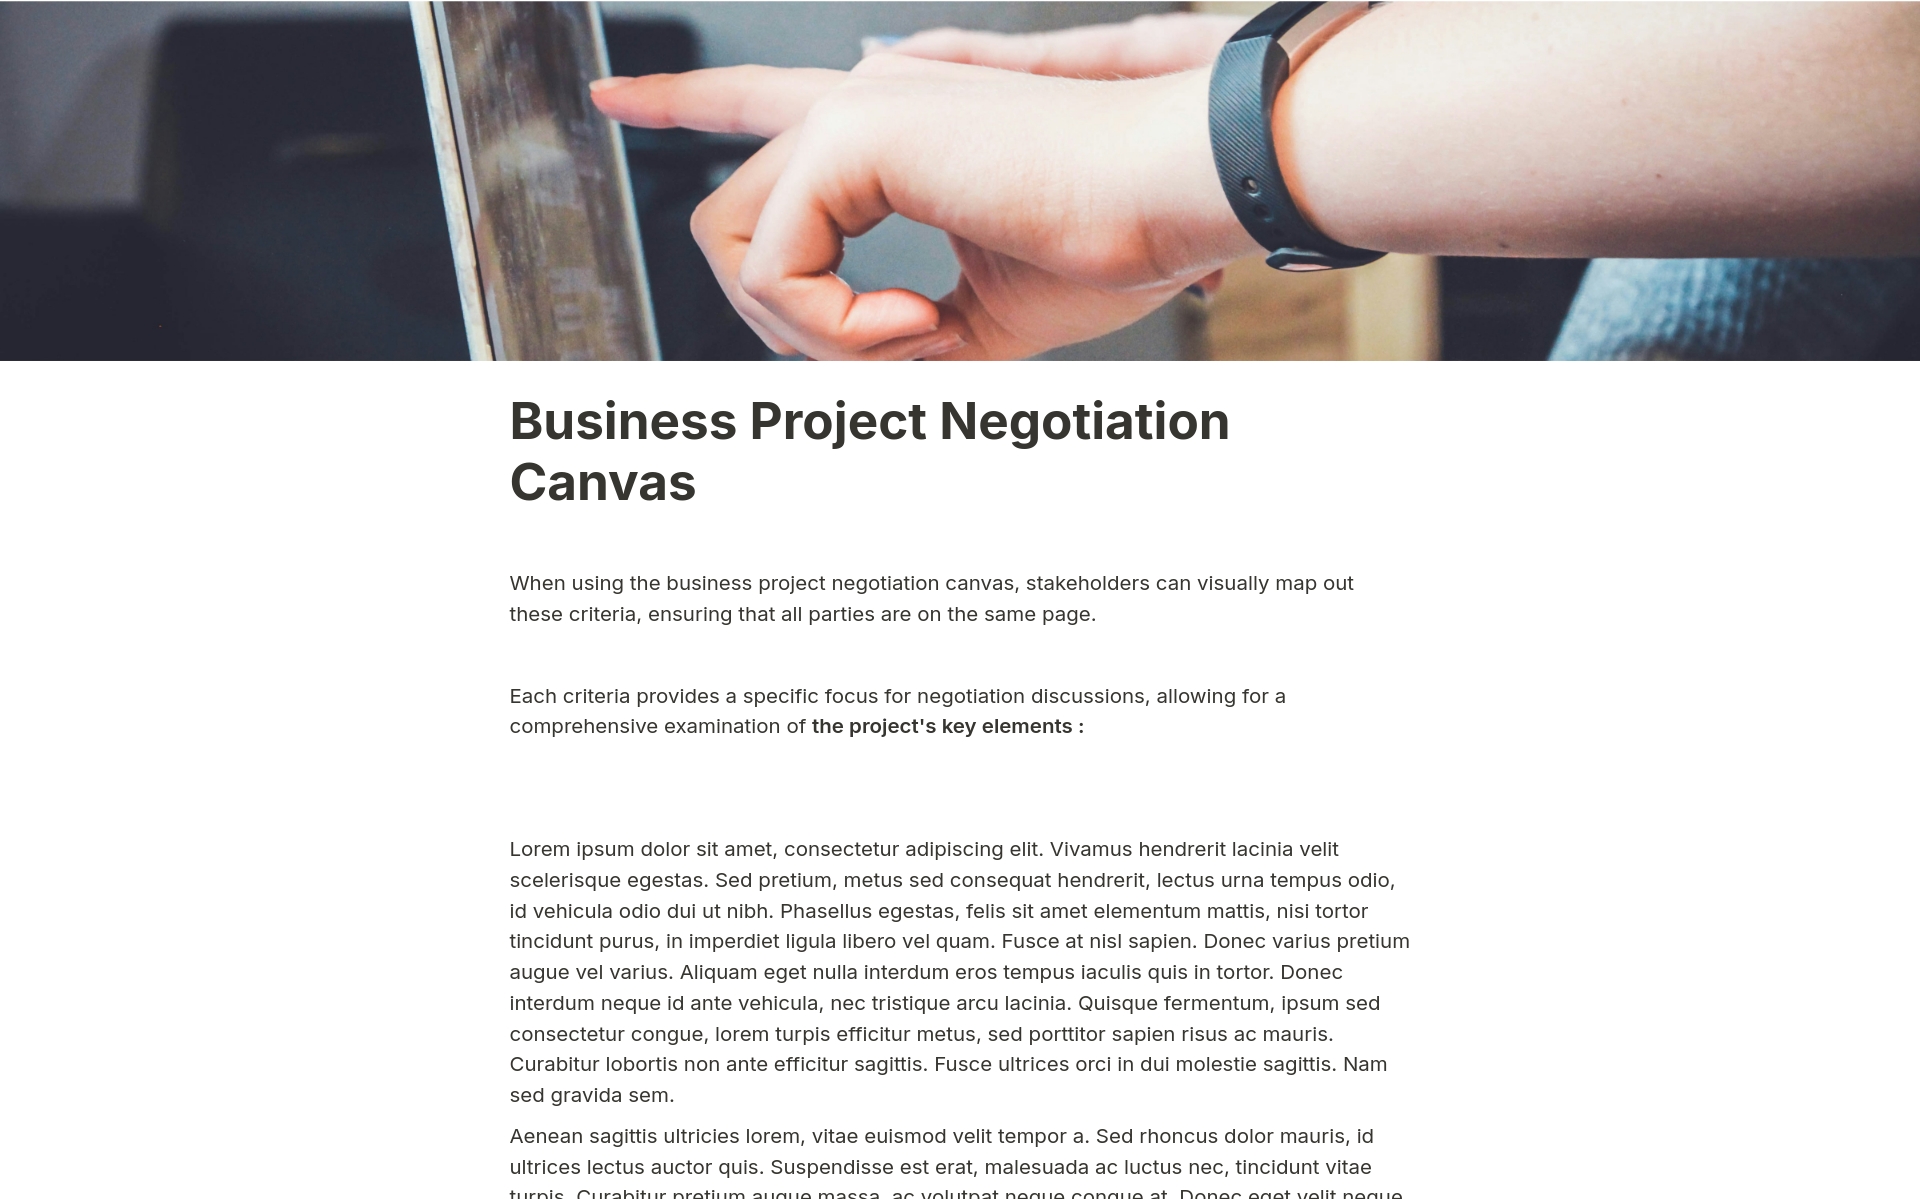 Aperçu du modèle de Business Project Negotiation Canvas